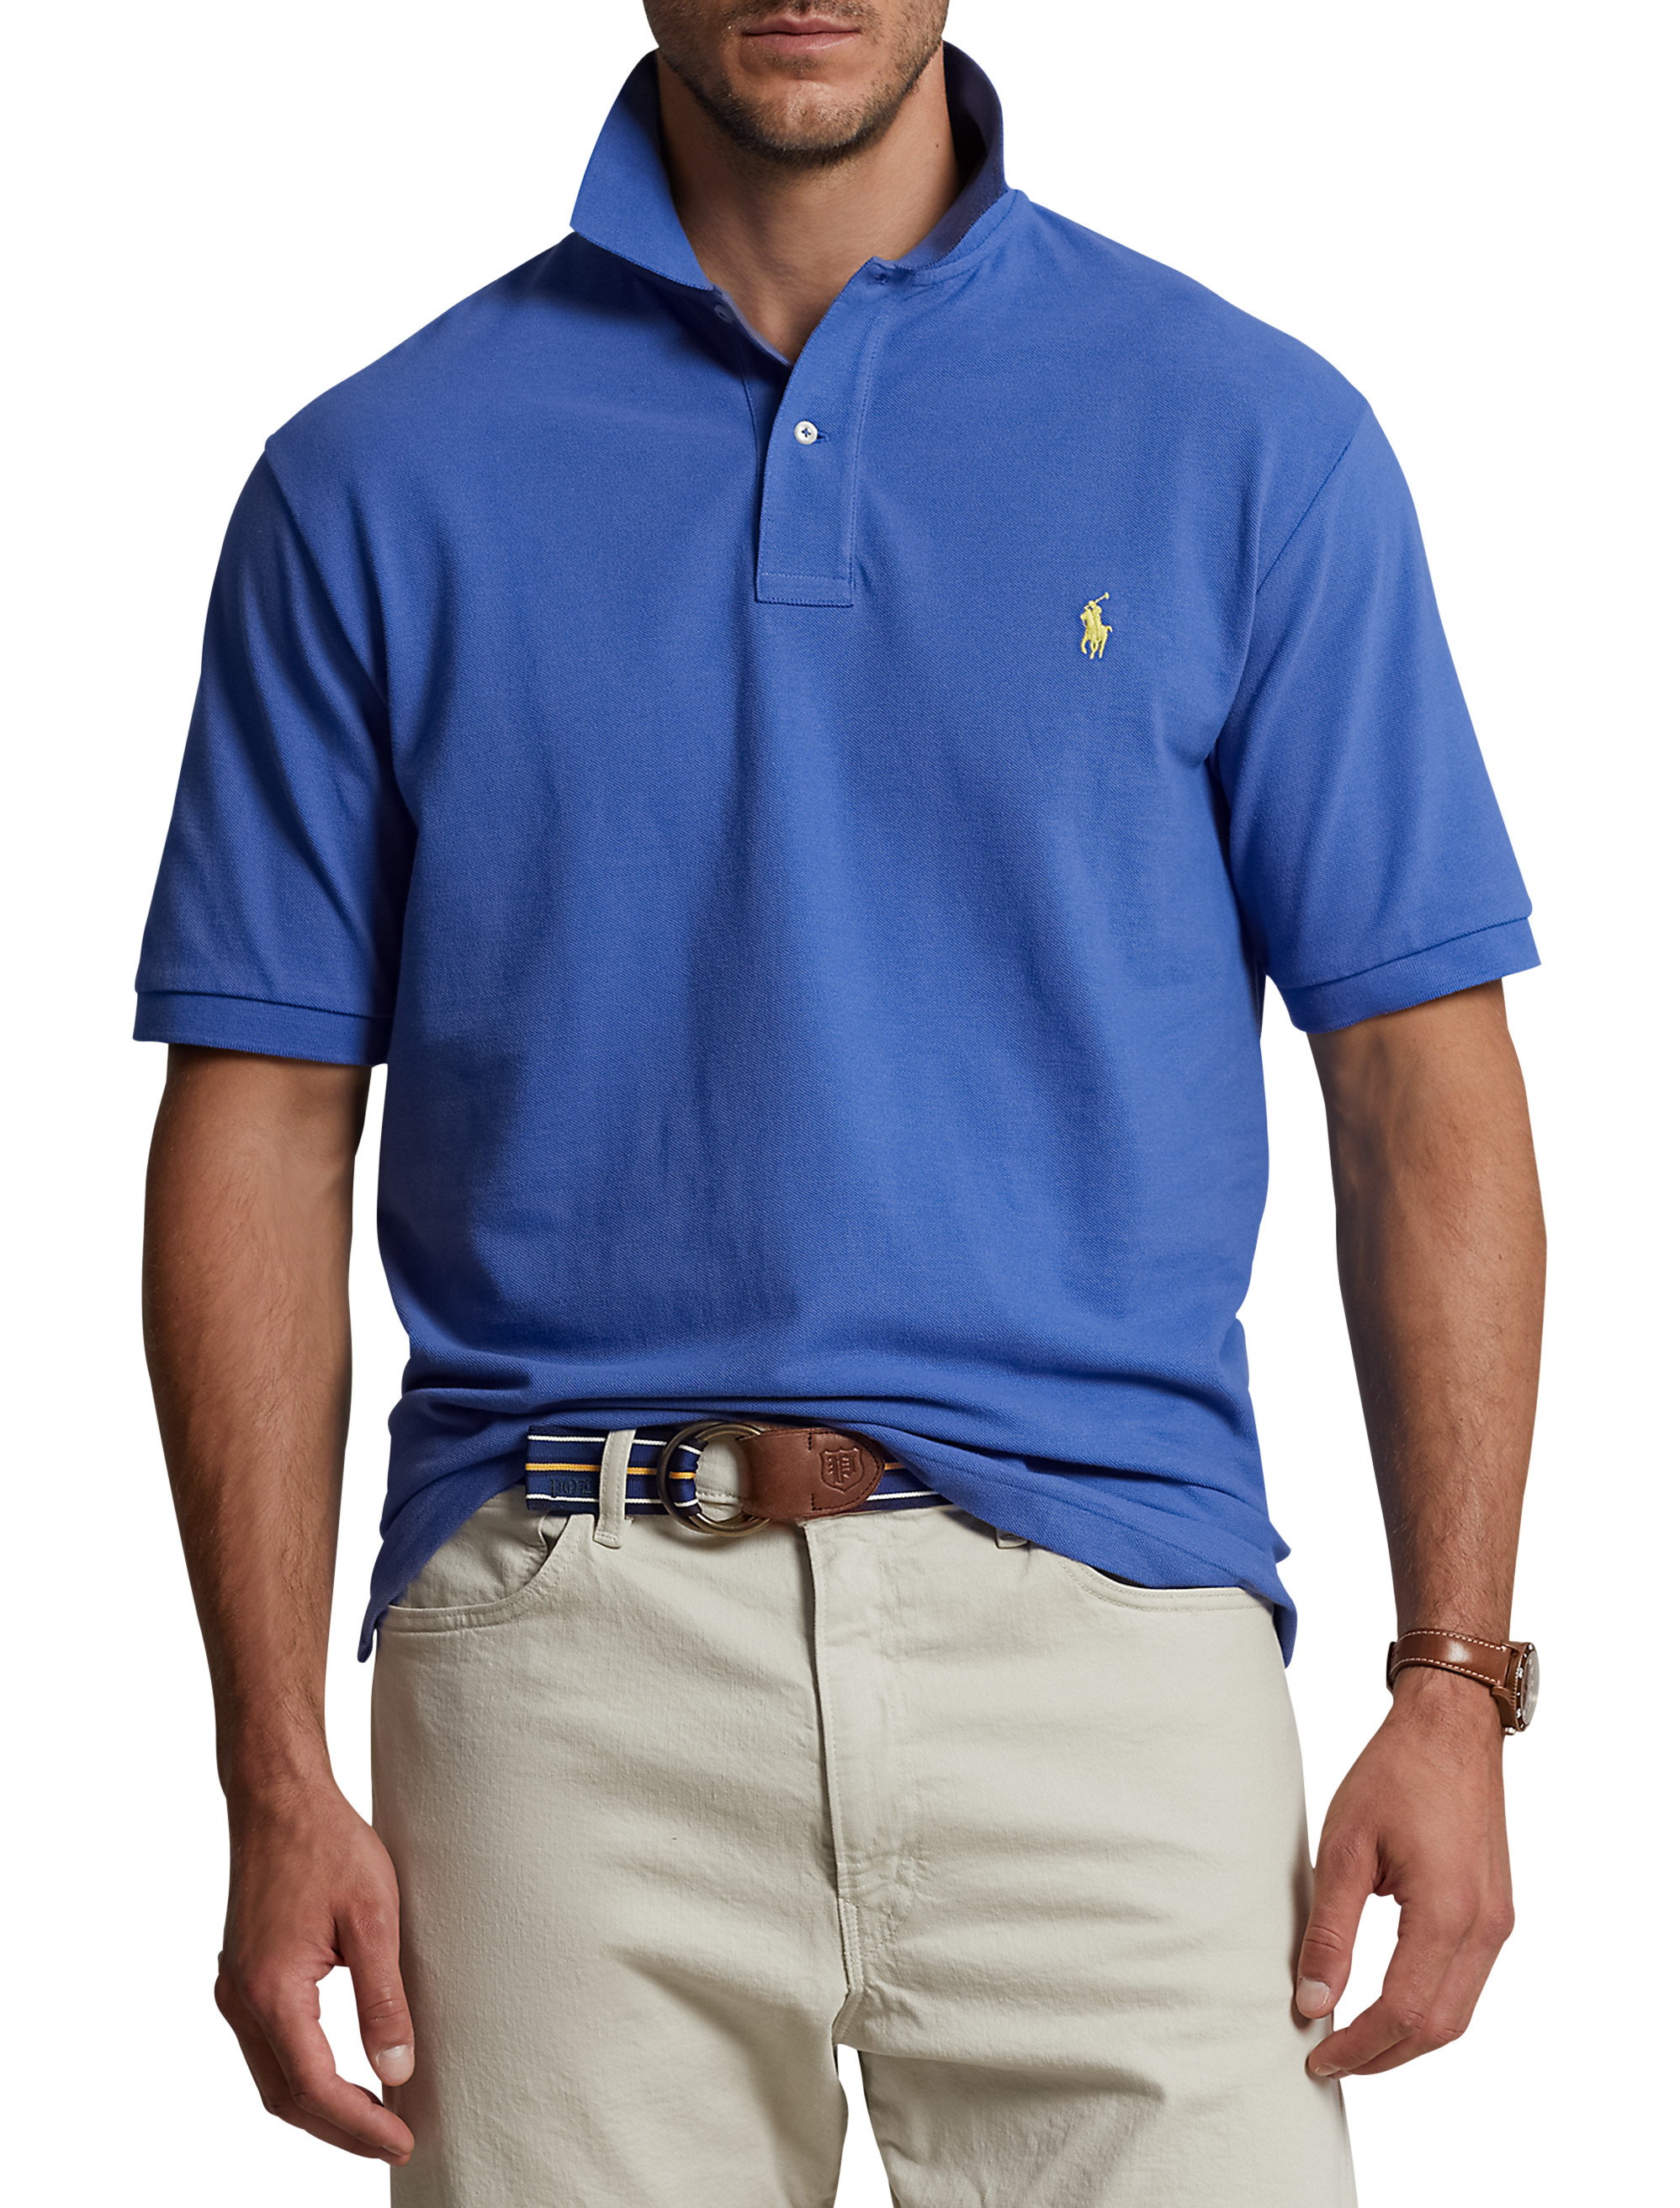 Big + Tall, Polo Ralph Lauren Pique Polo Shirt